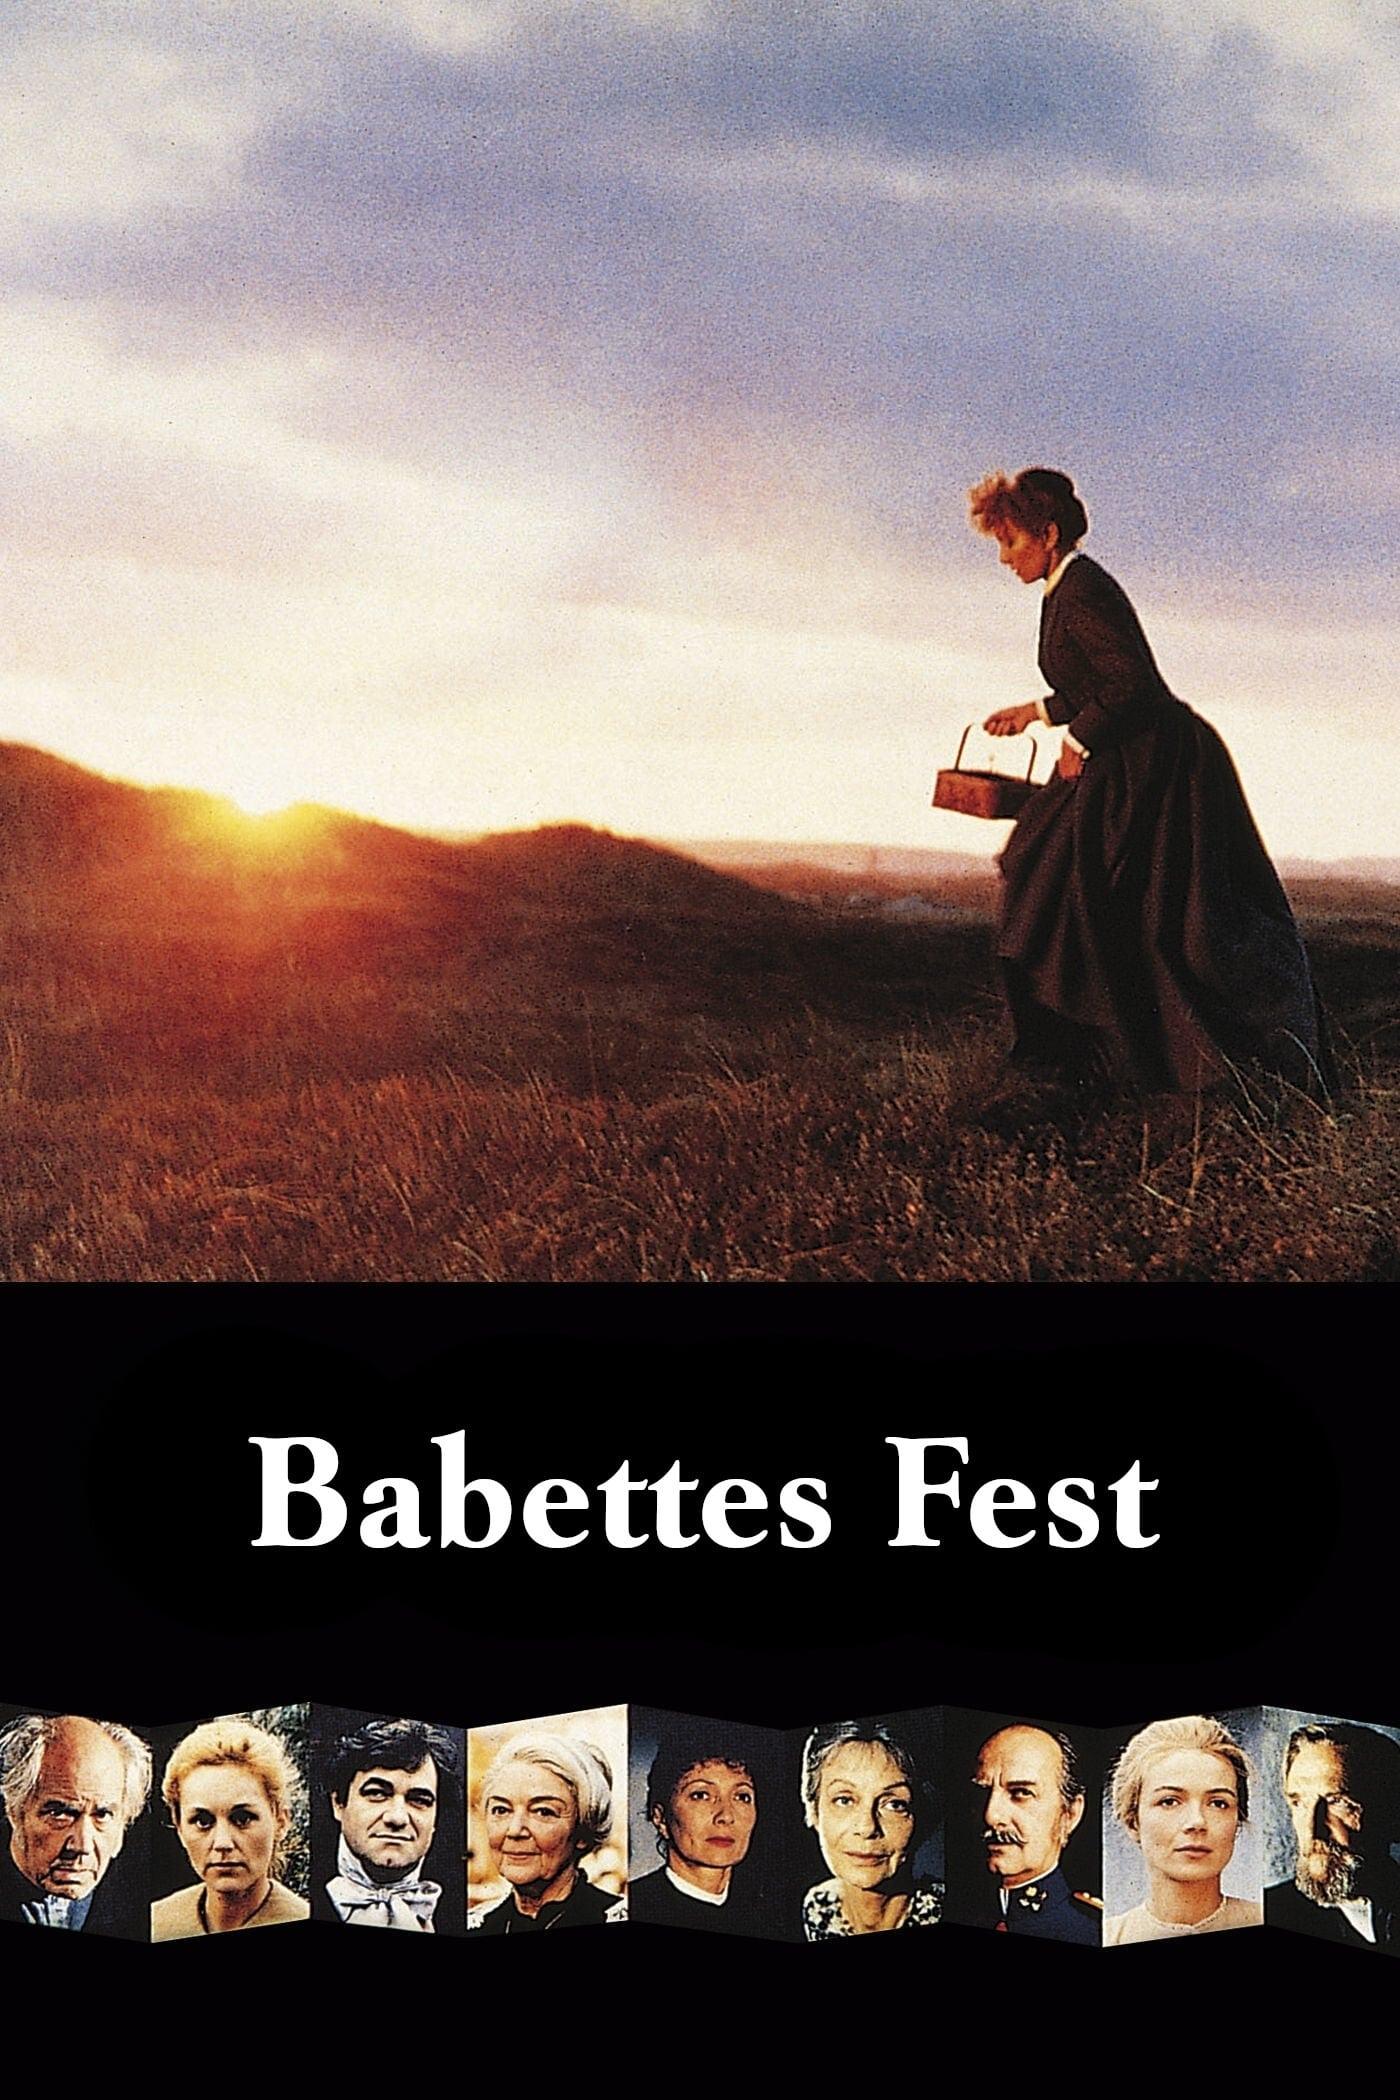 Babettes Fest poster